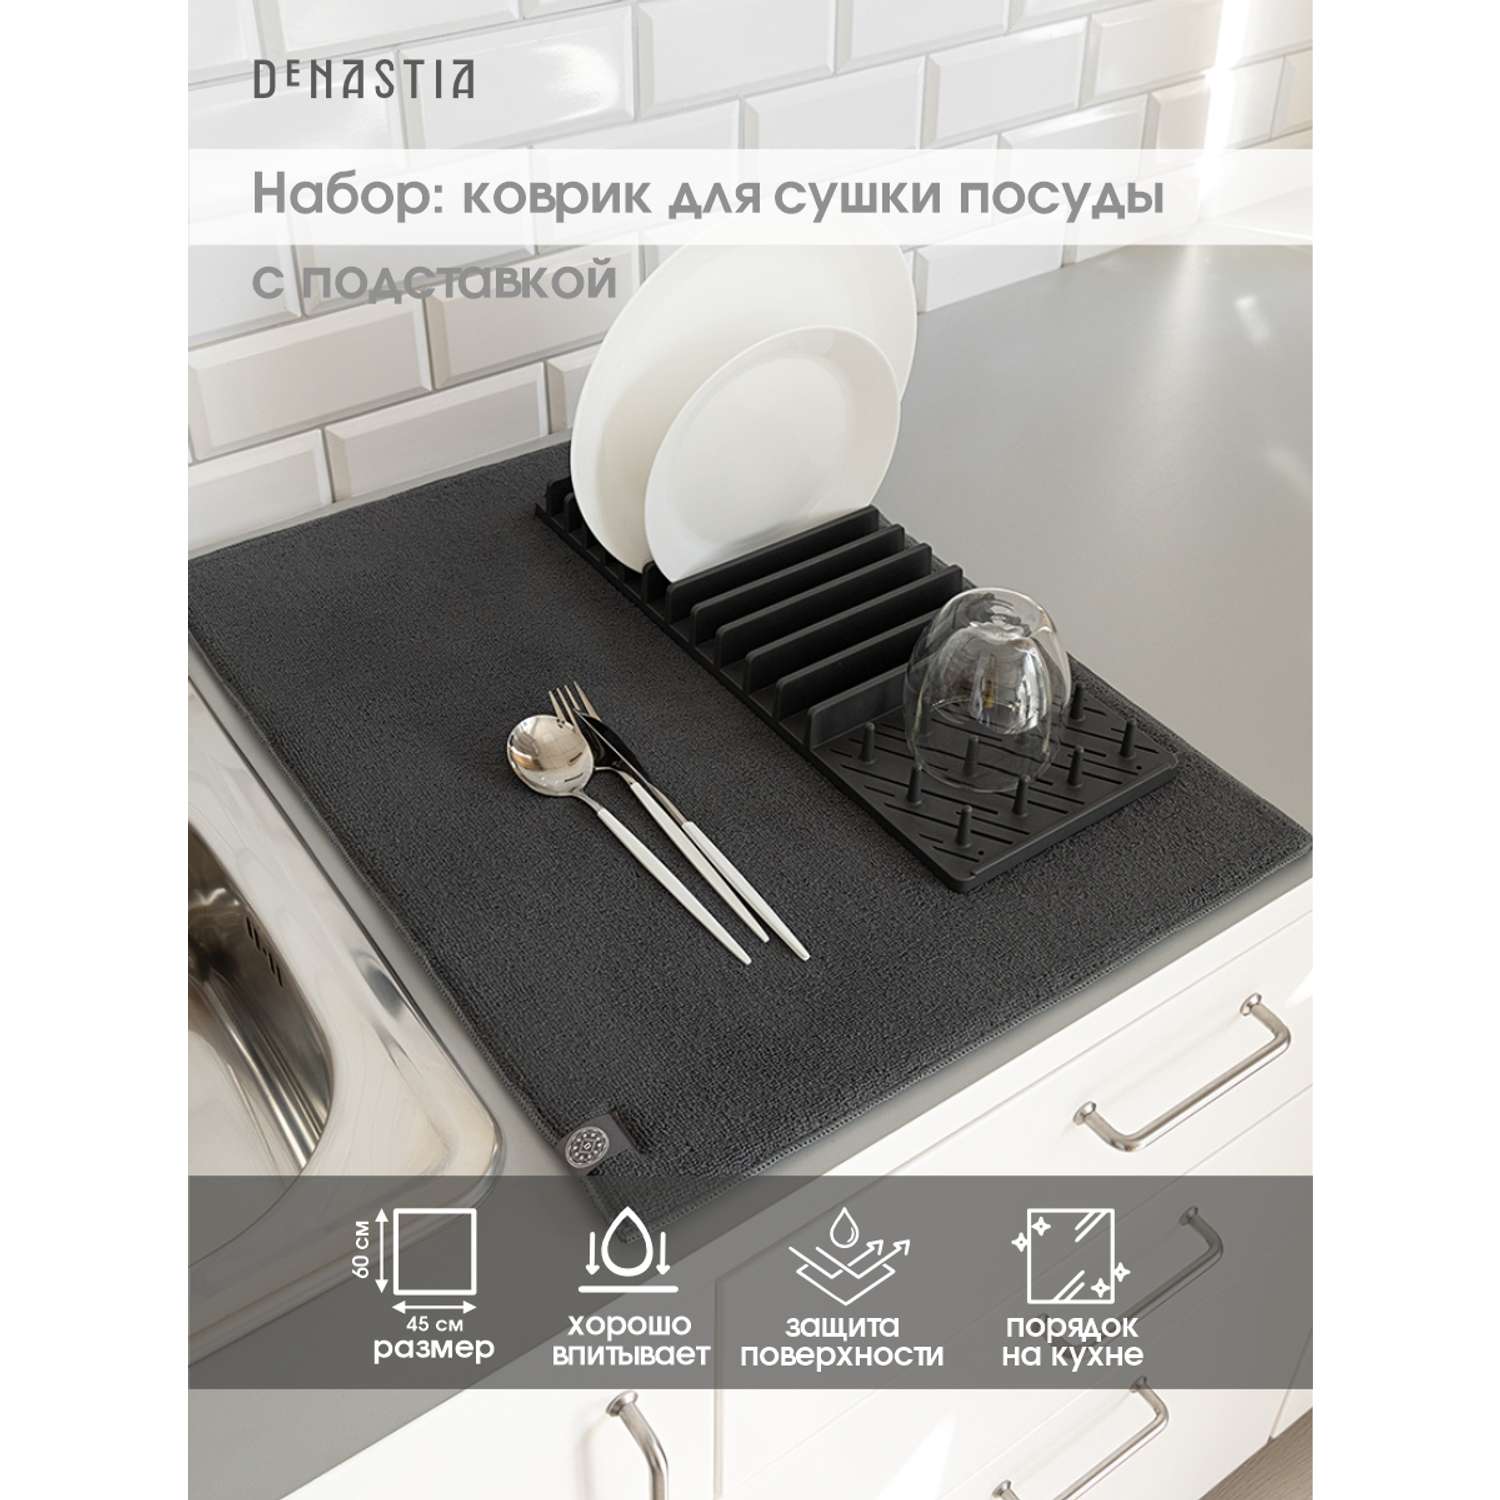 Набор для сушки посуды DeNASTIA коврик и сушилка большой размер тёмно-серый T000239 - фото 2